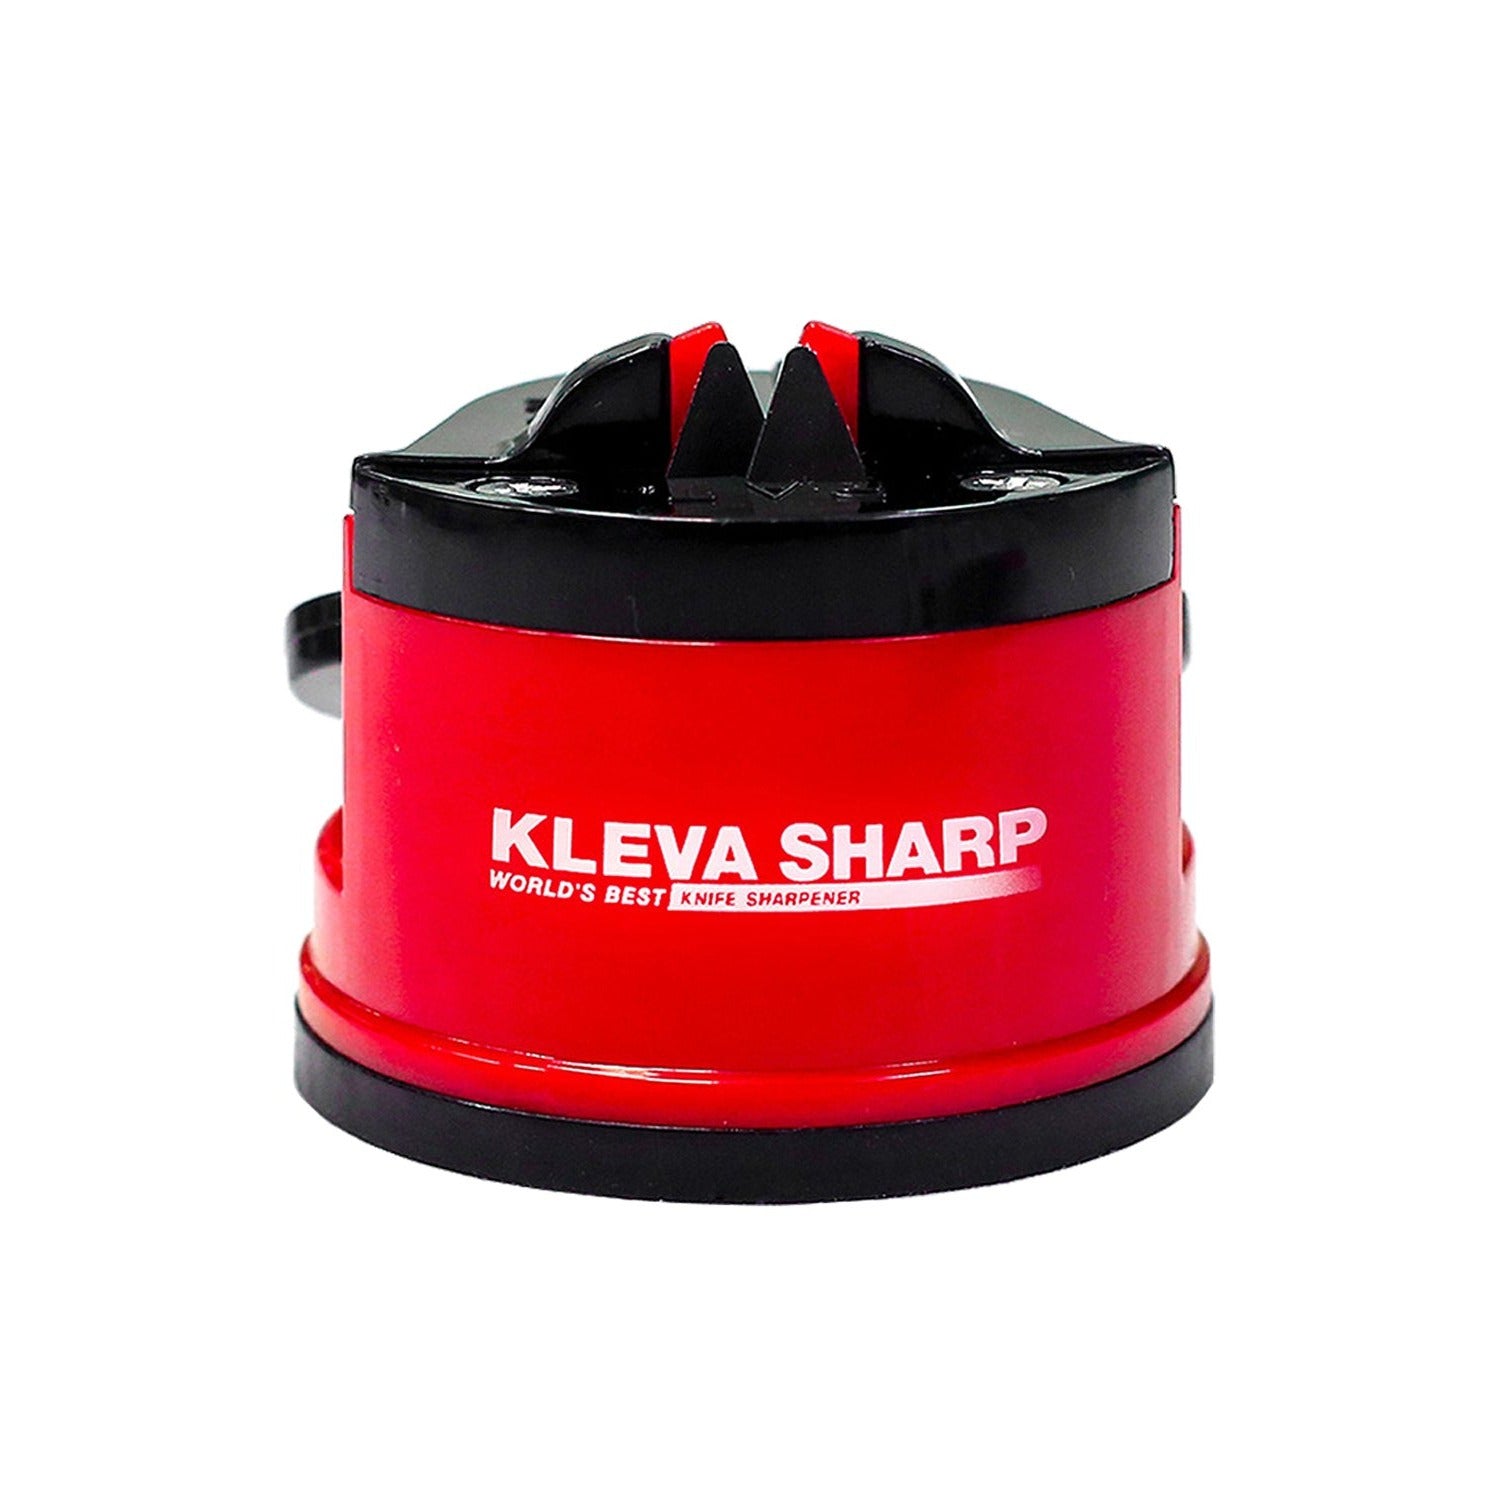 Kleva Sharp® Original The Worlds Best Knife Sharpener! UPSELL Kleva Range   